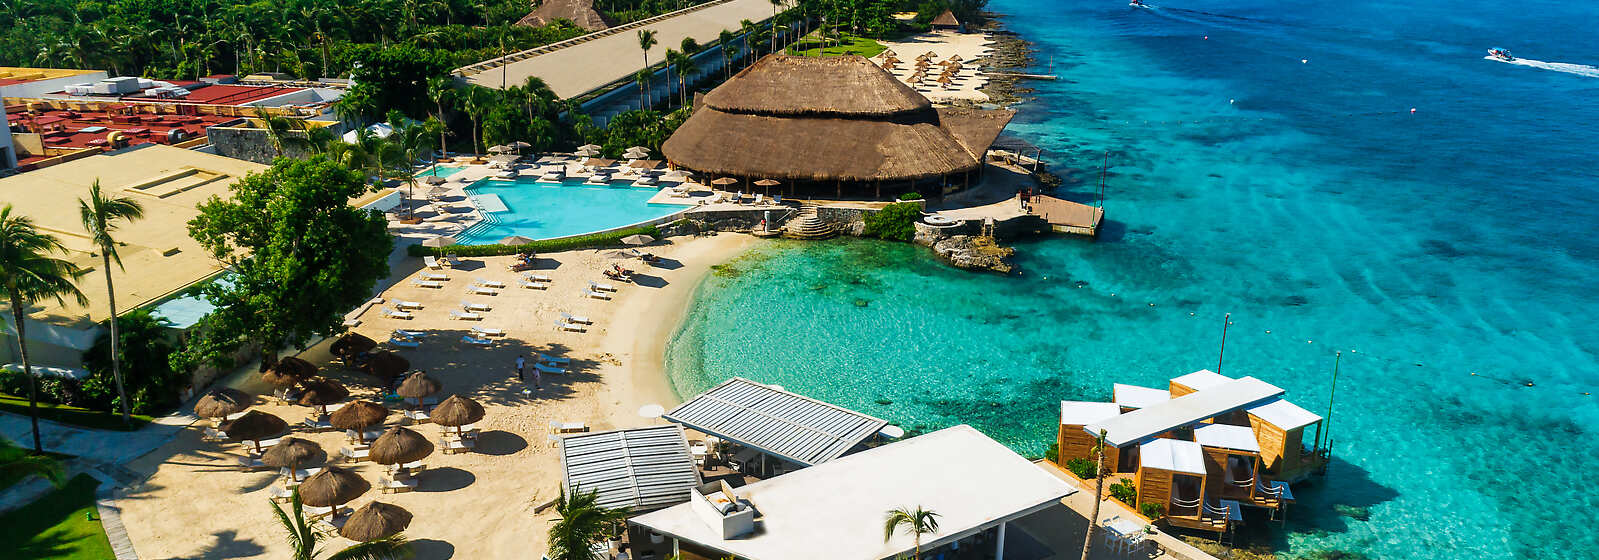 Central beach, Le Cap Beach Club and cabanas, Infinity pool and Caribeño restaurant